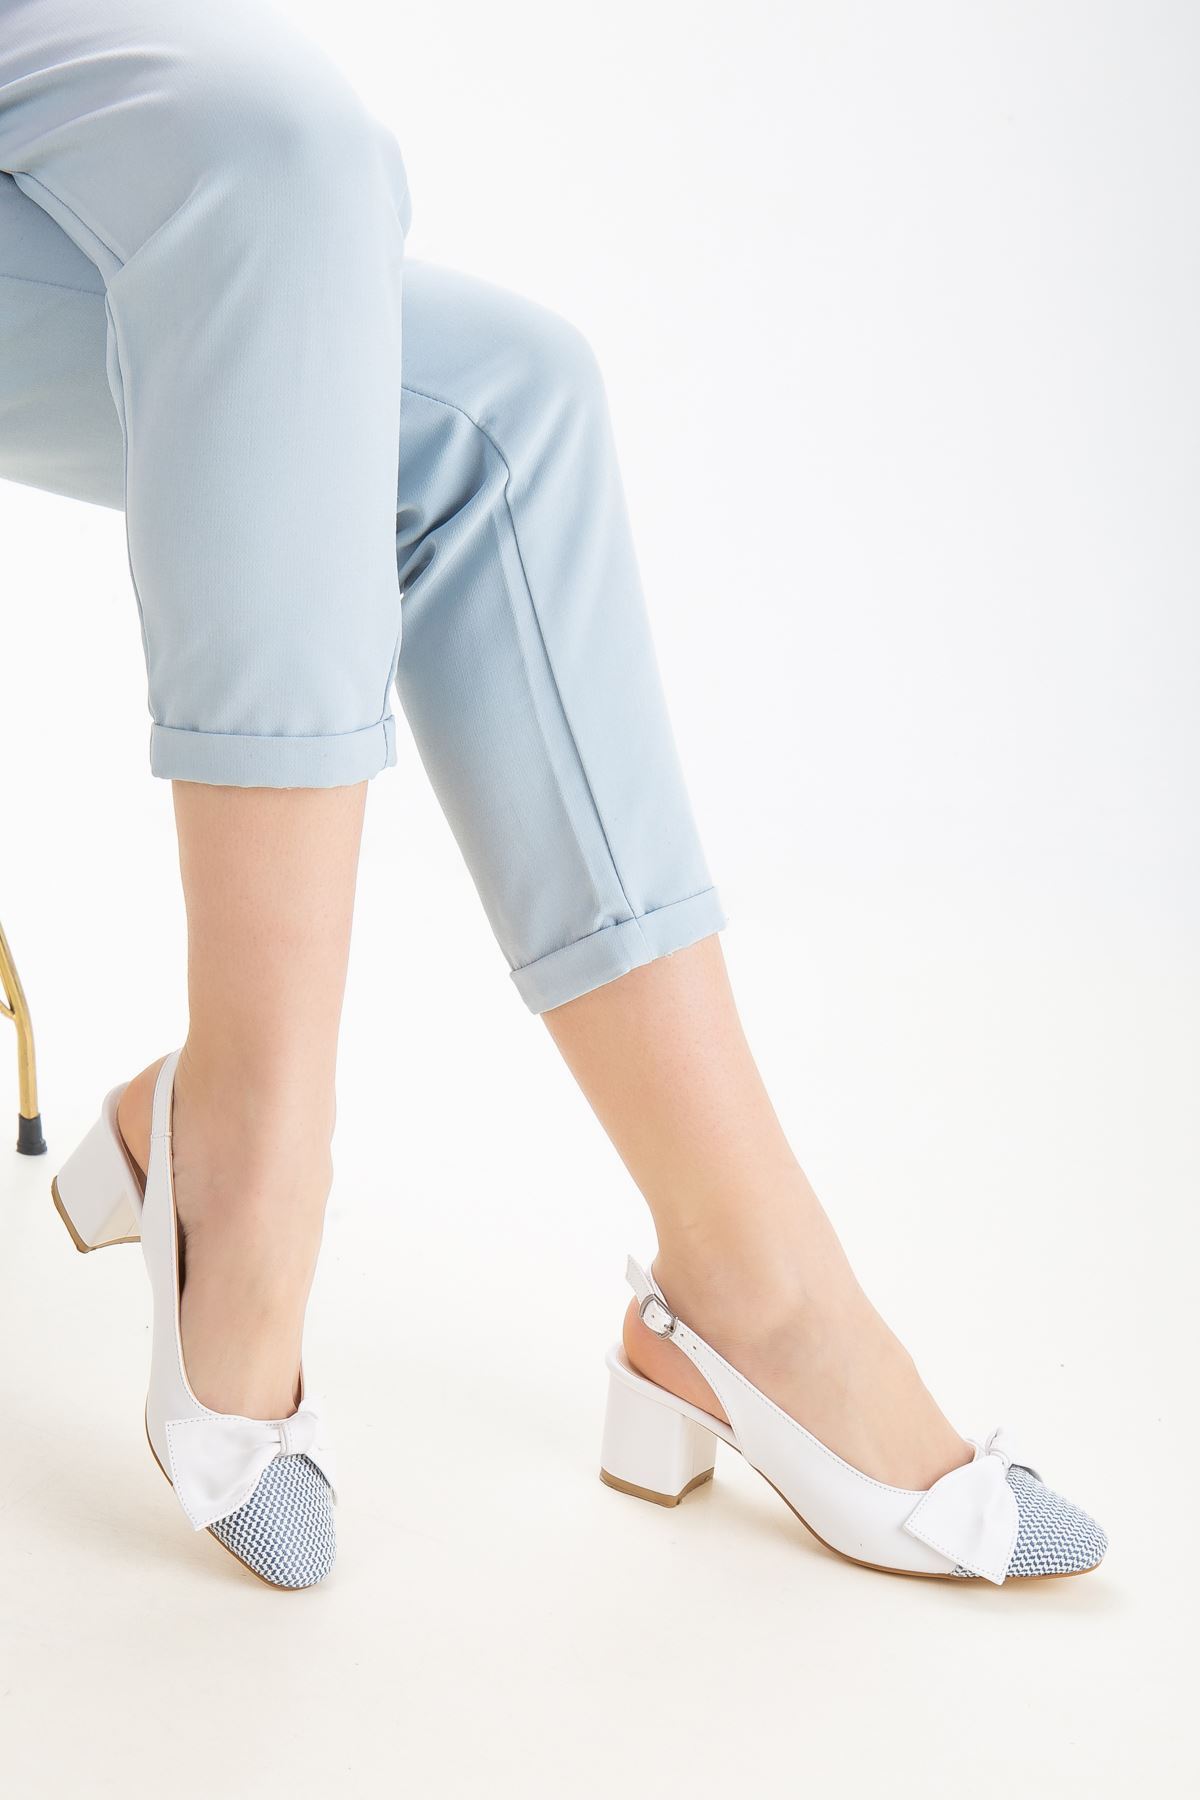 Aria Kadın Kurdele Detaylı Topuklu Ayakkabı Beyaz Cilt